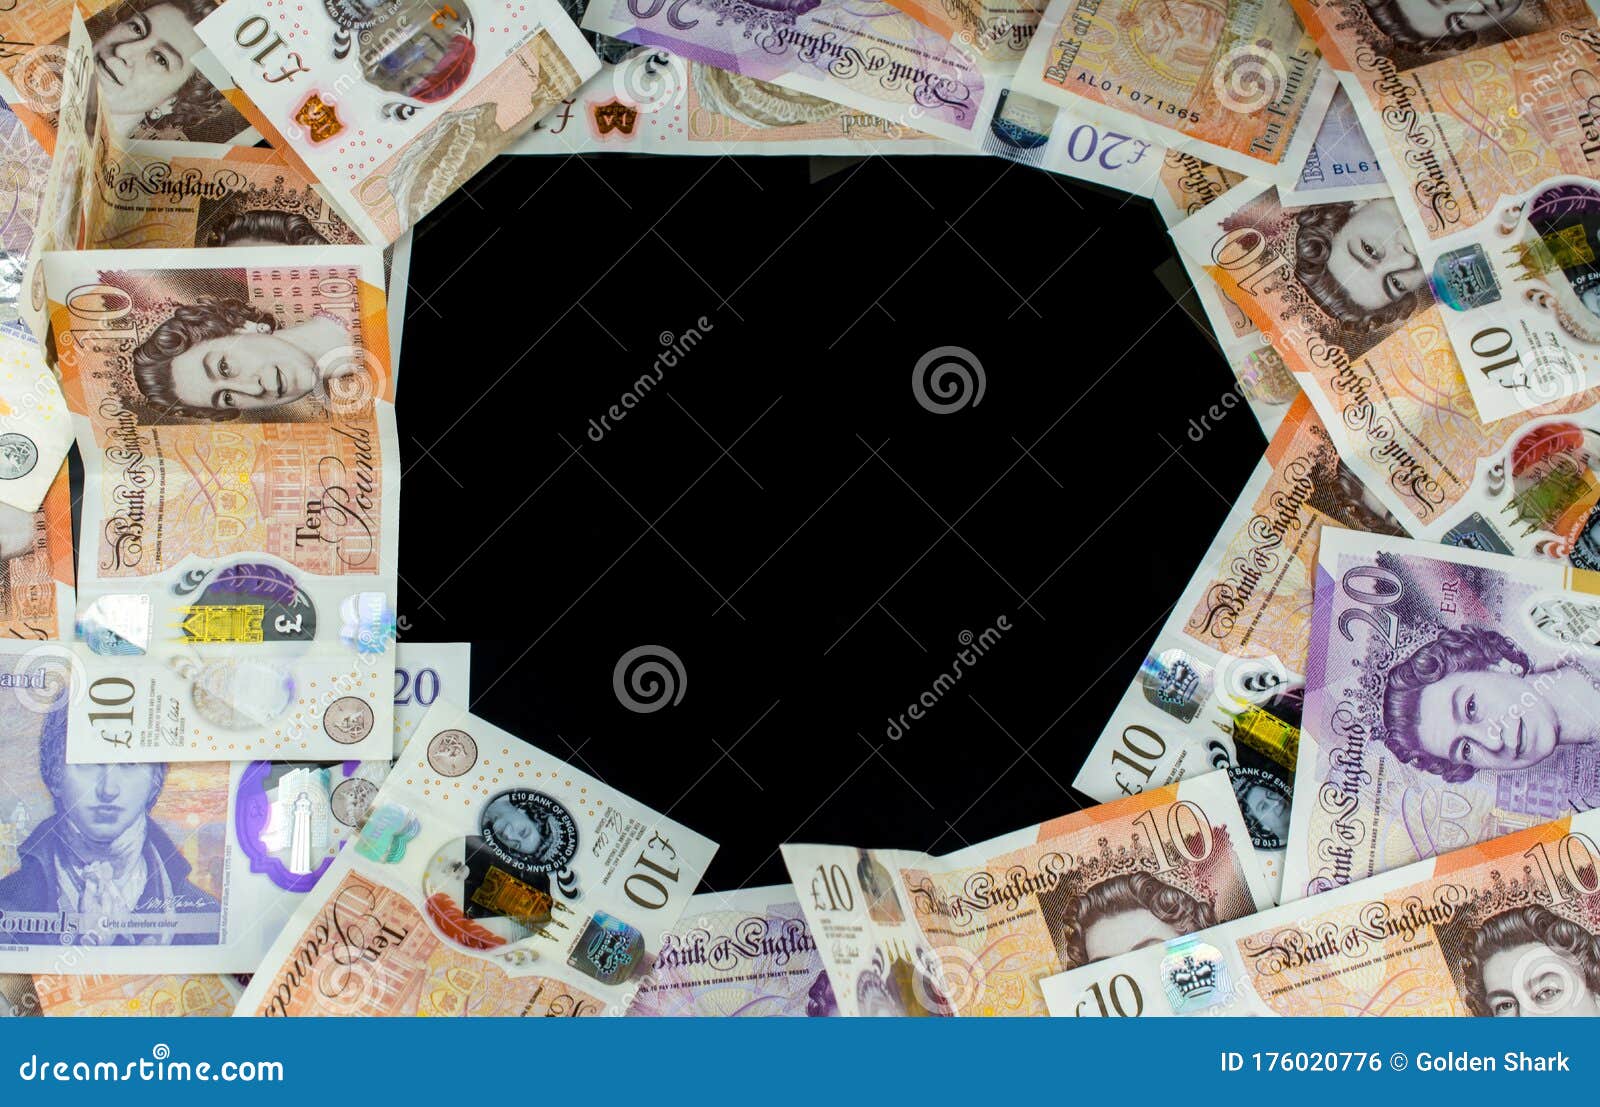 Money Of United Kingdom Close Up On Black Background ...